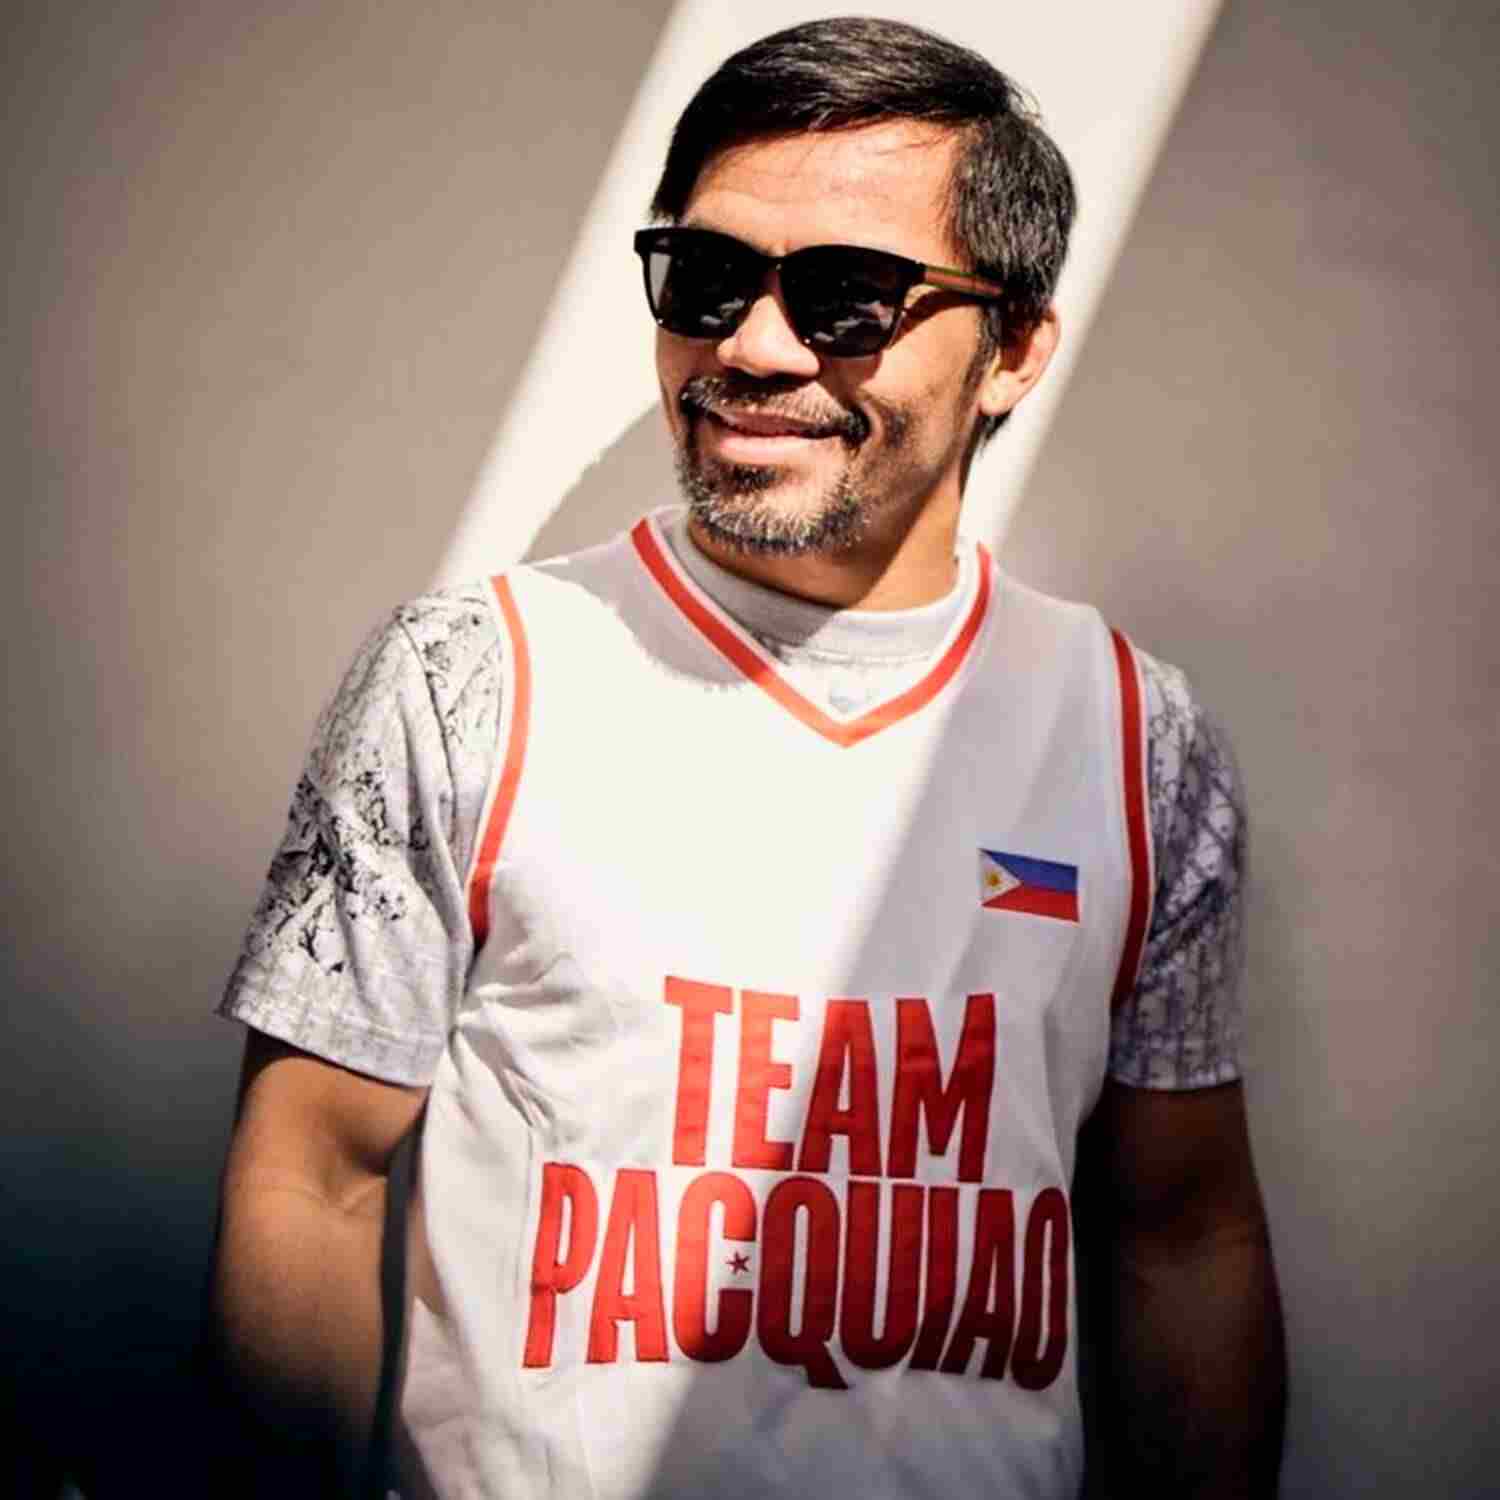 Conoce a la organización de esports de Manny Pacquiao